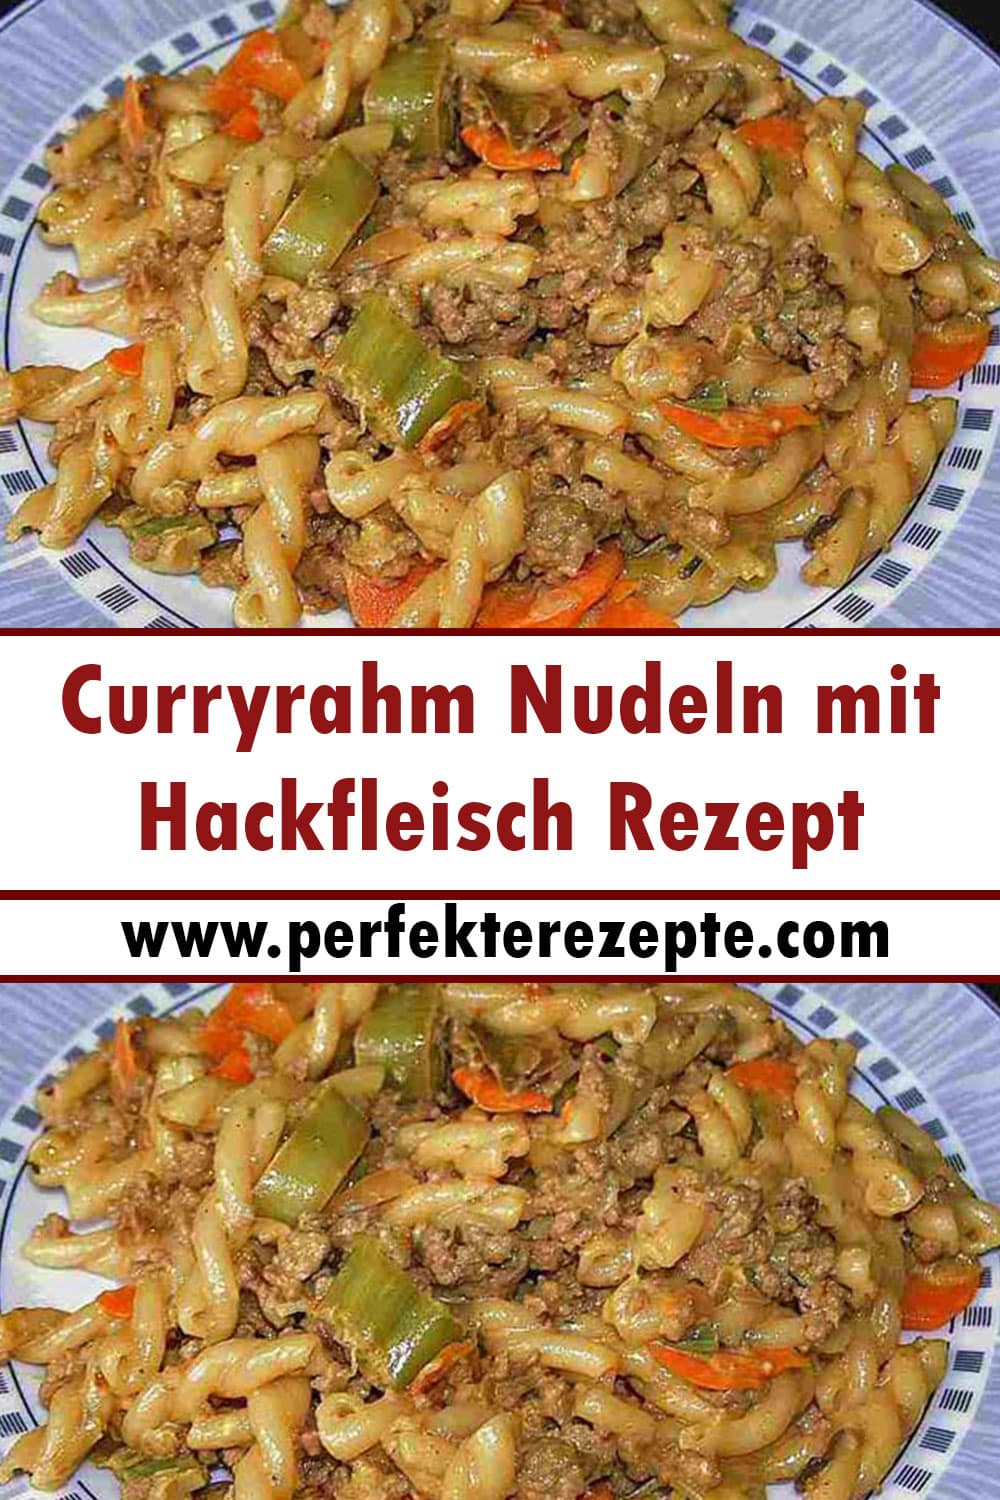 Curryrahm Nudeln mit Hackfleisch Rezept